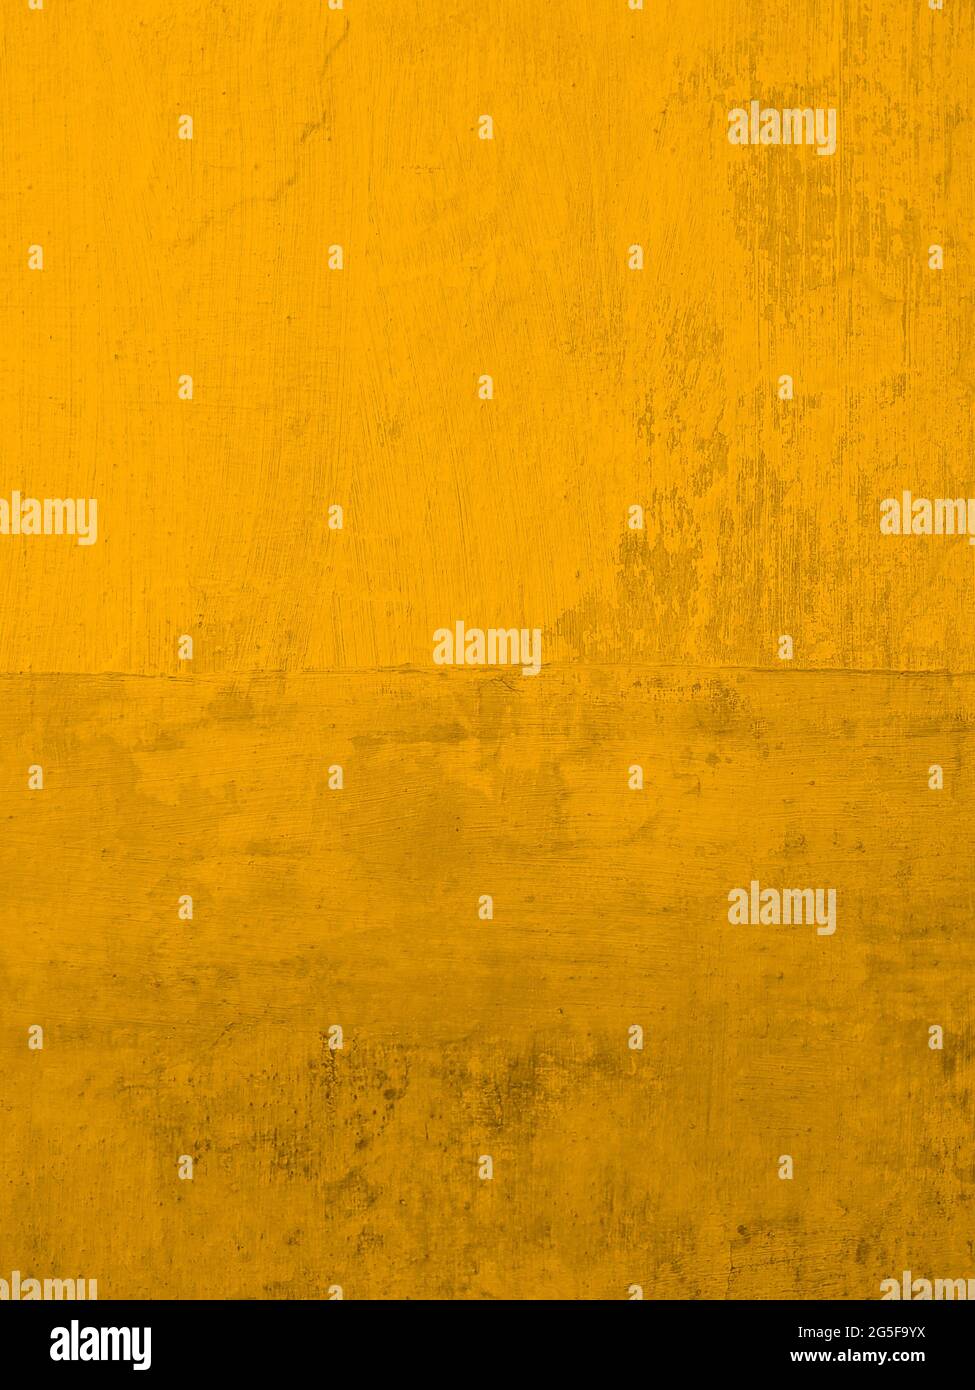 Peinture murale en stuc jaune or. Fond d'écran moderne texturé et rouillé. Taille verticale. Banque D'Images